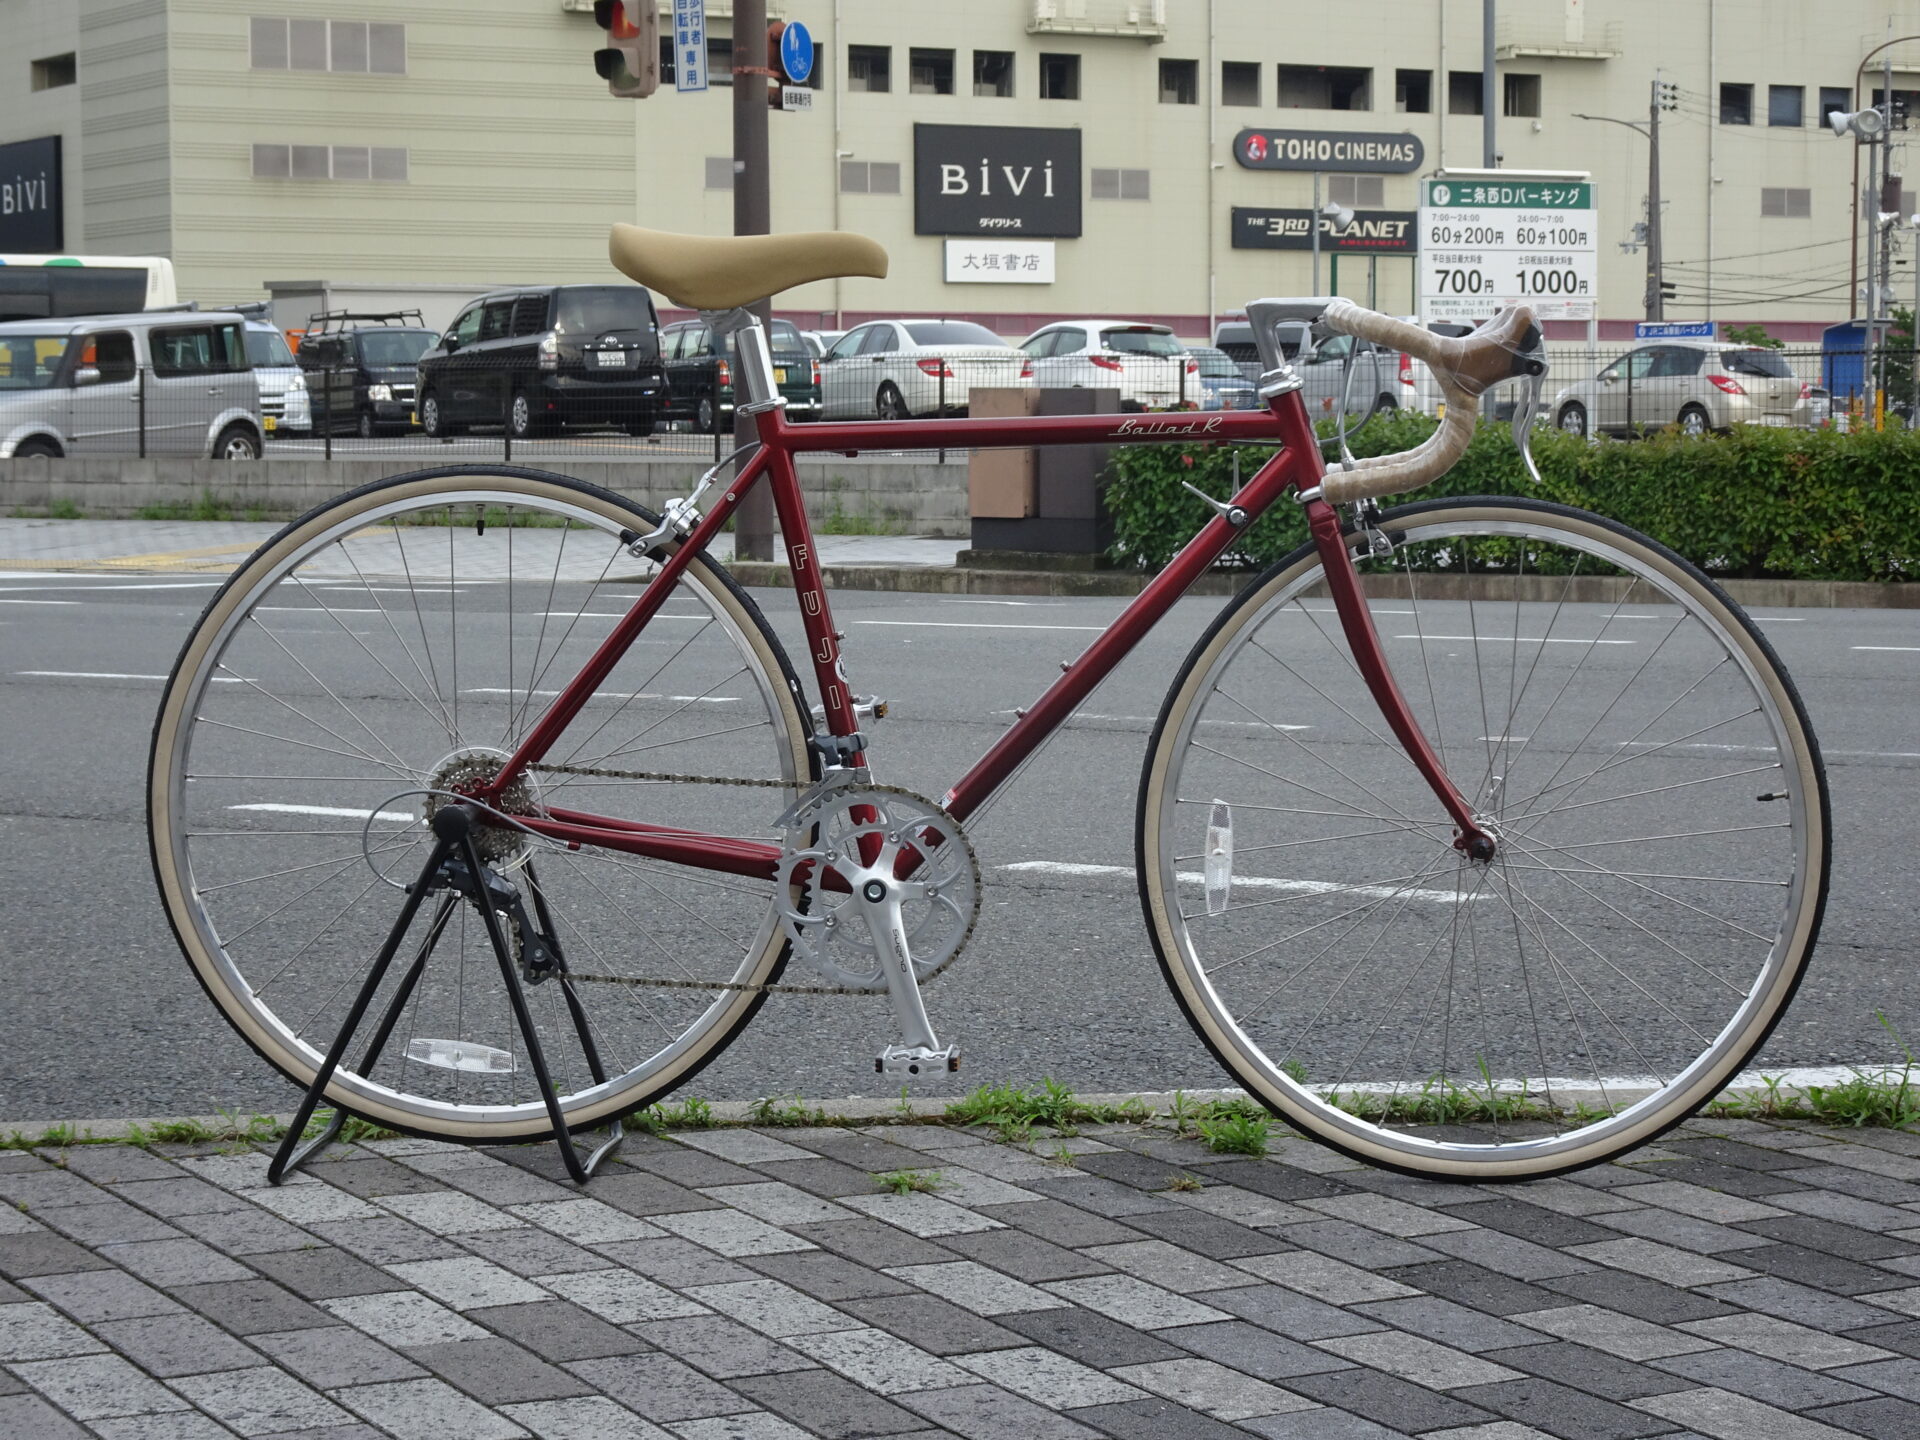 お買い得情報!! FUJI アウトレット BALLAD R | 京都の中古自転車・新車